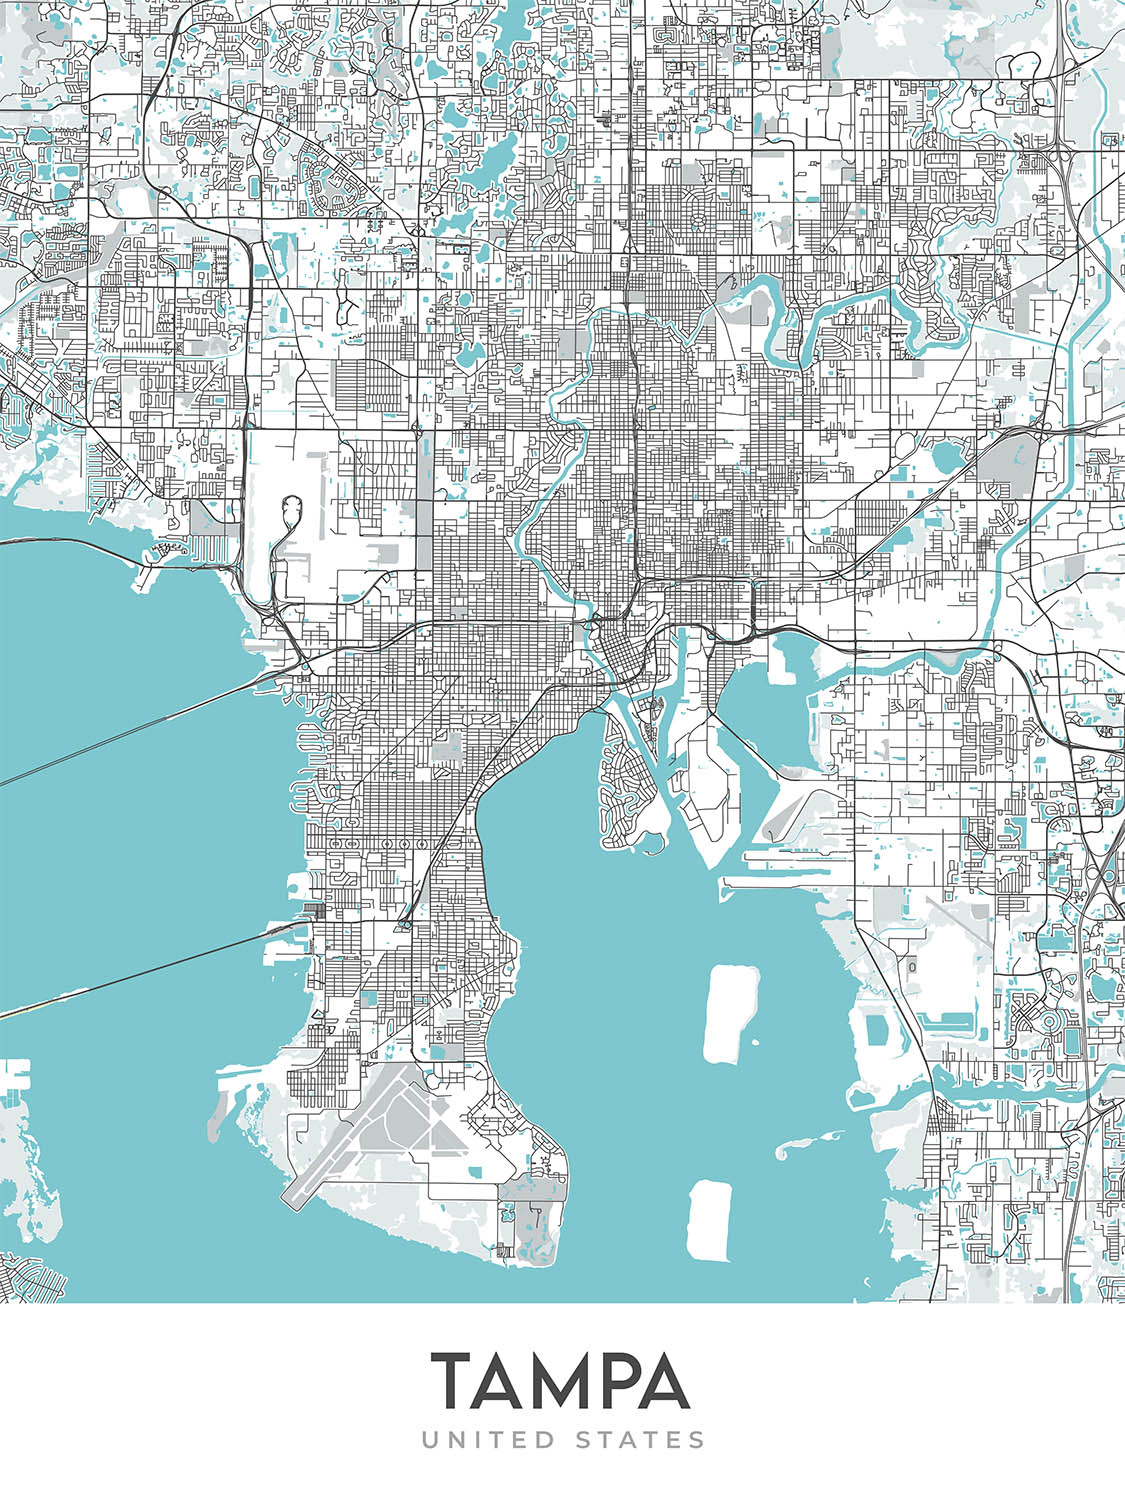 Moderner Stadtplan von Tampa, FL: Innenstadt, Ybor City, Bayshore, Flughafen, Stadion